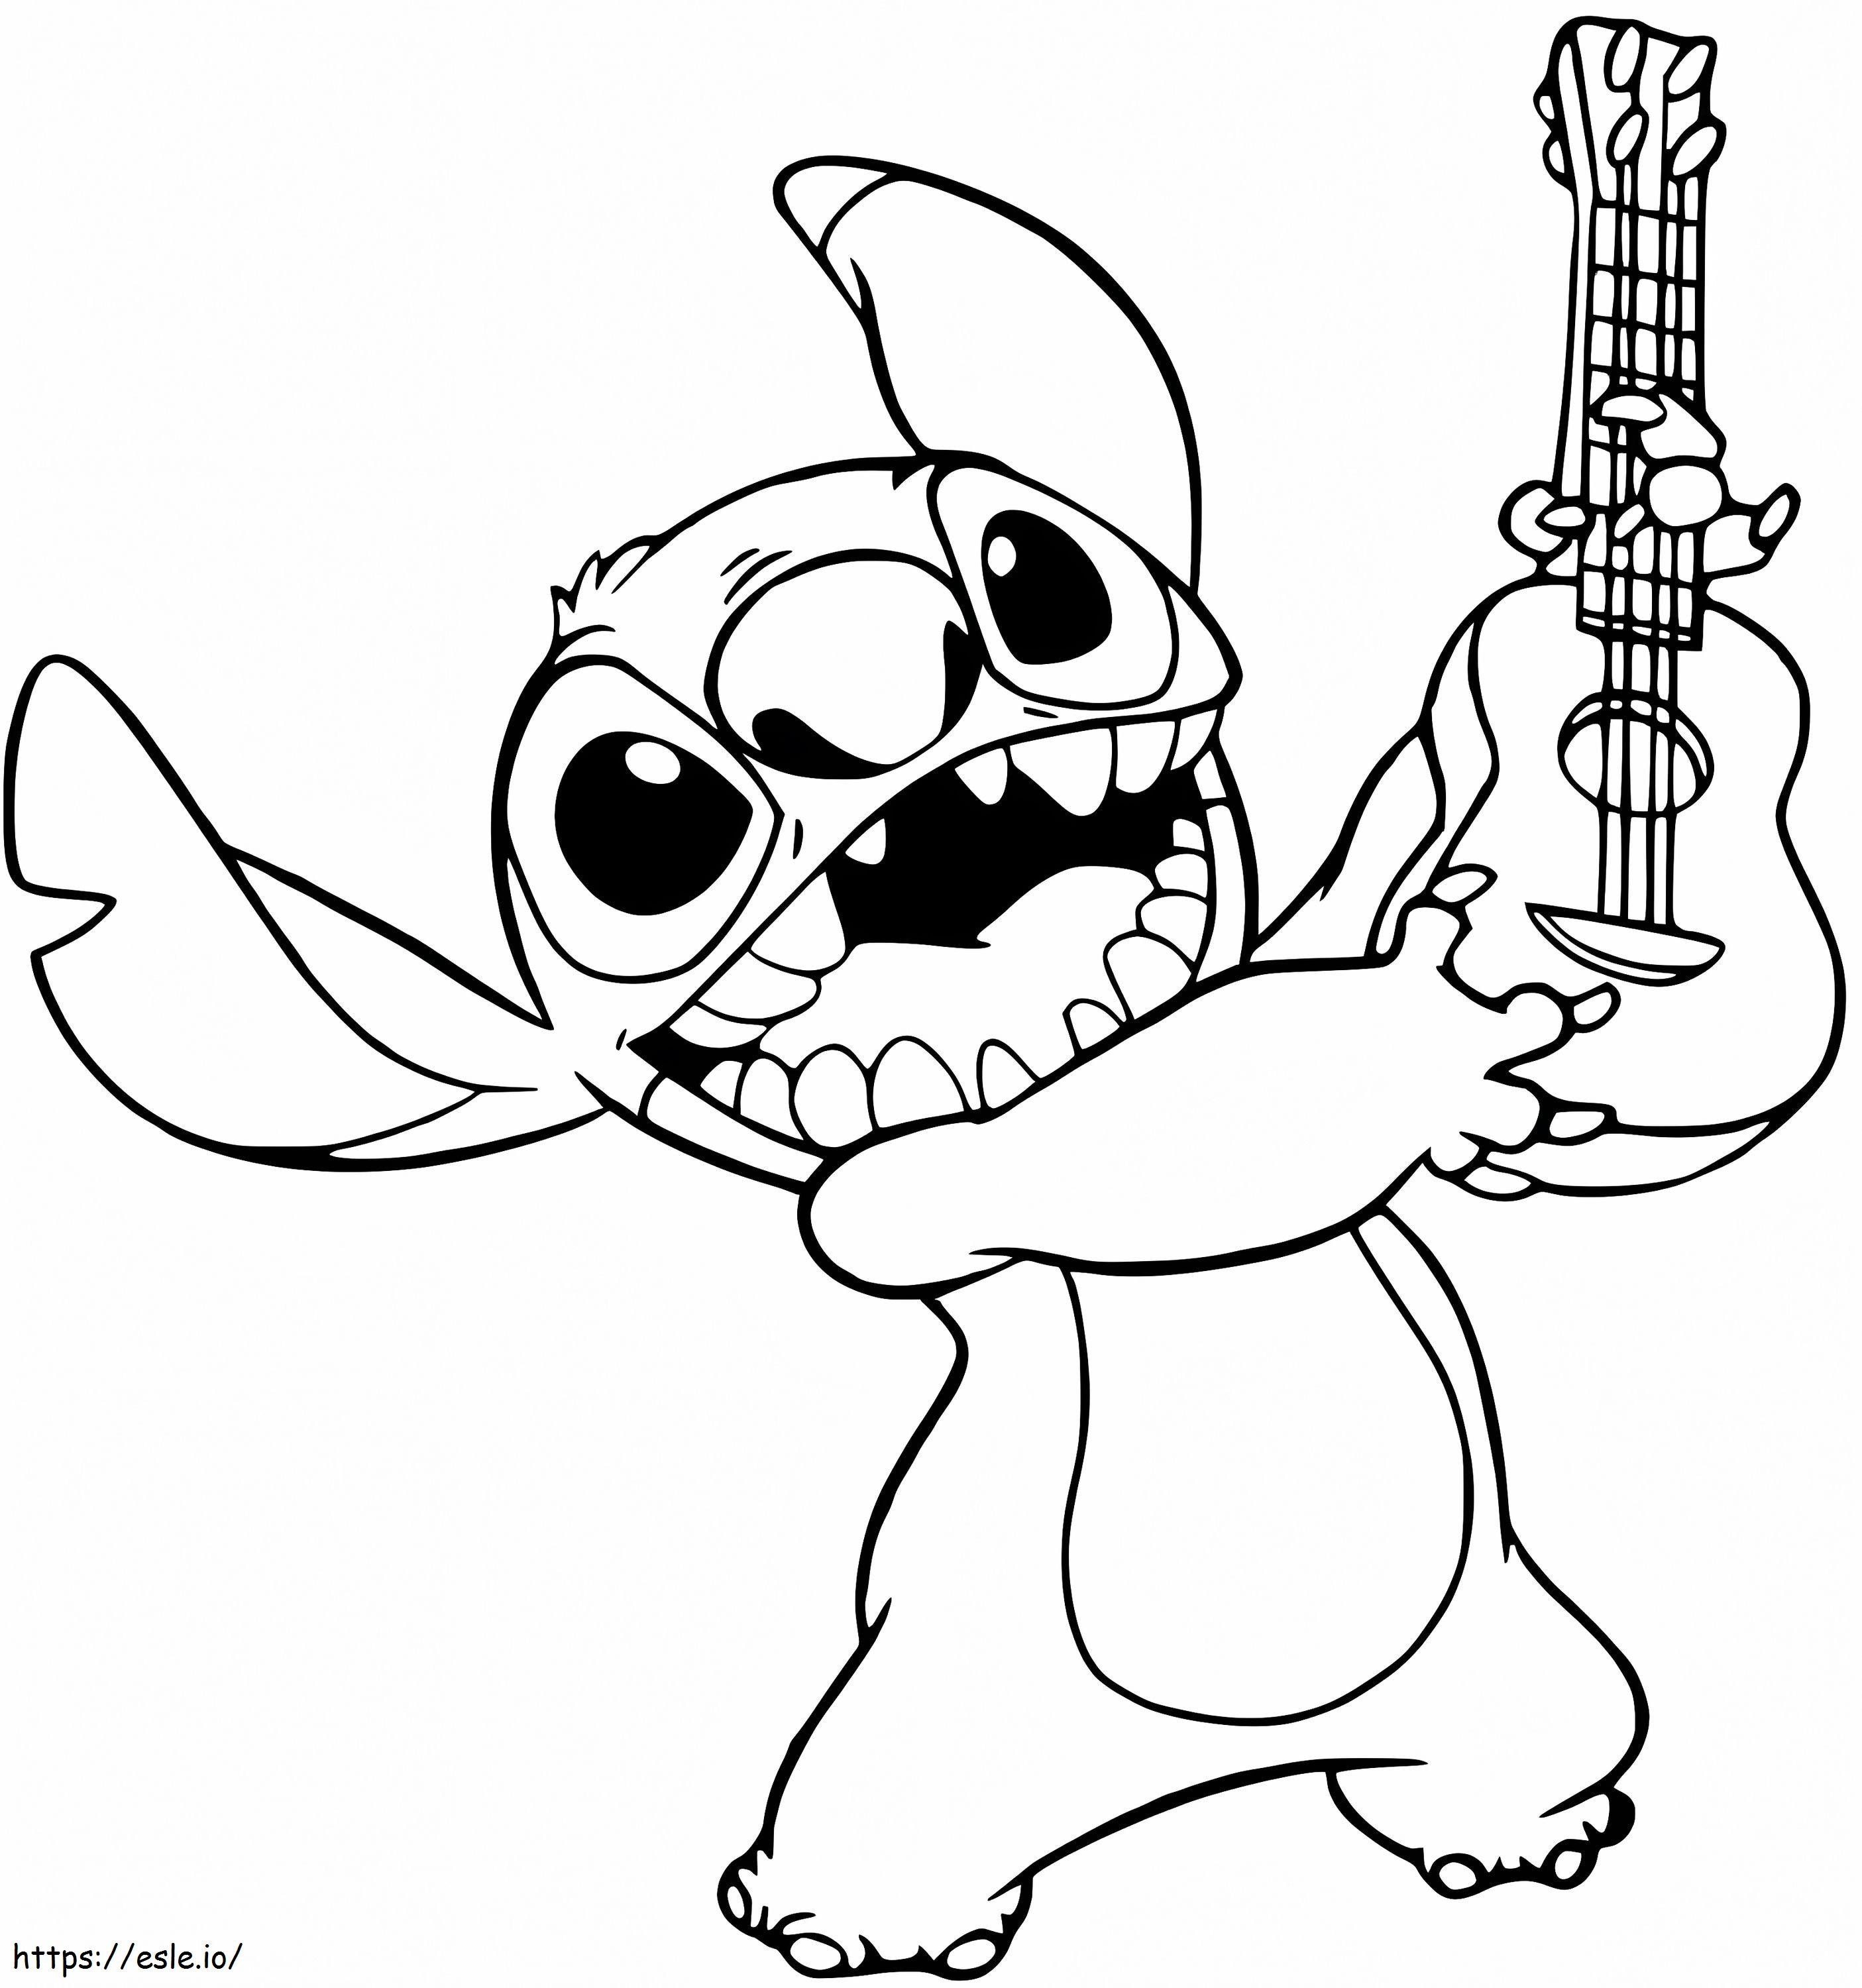 Stitch A La Guitare coloring page